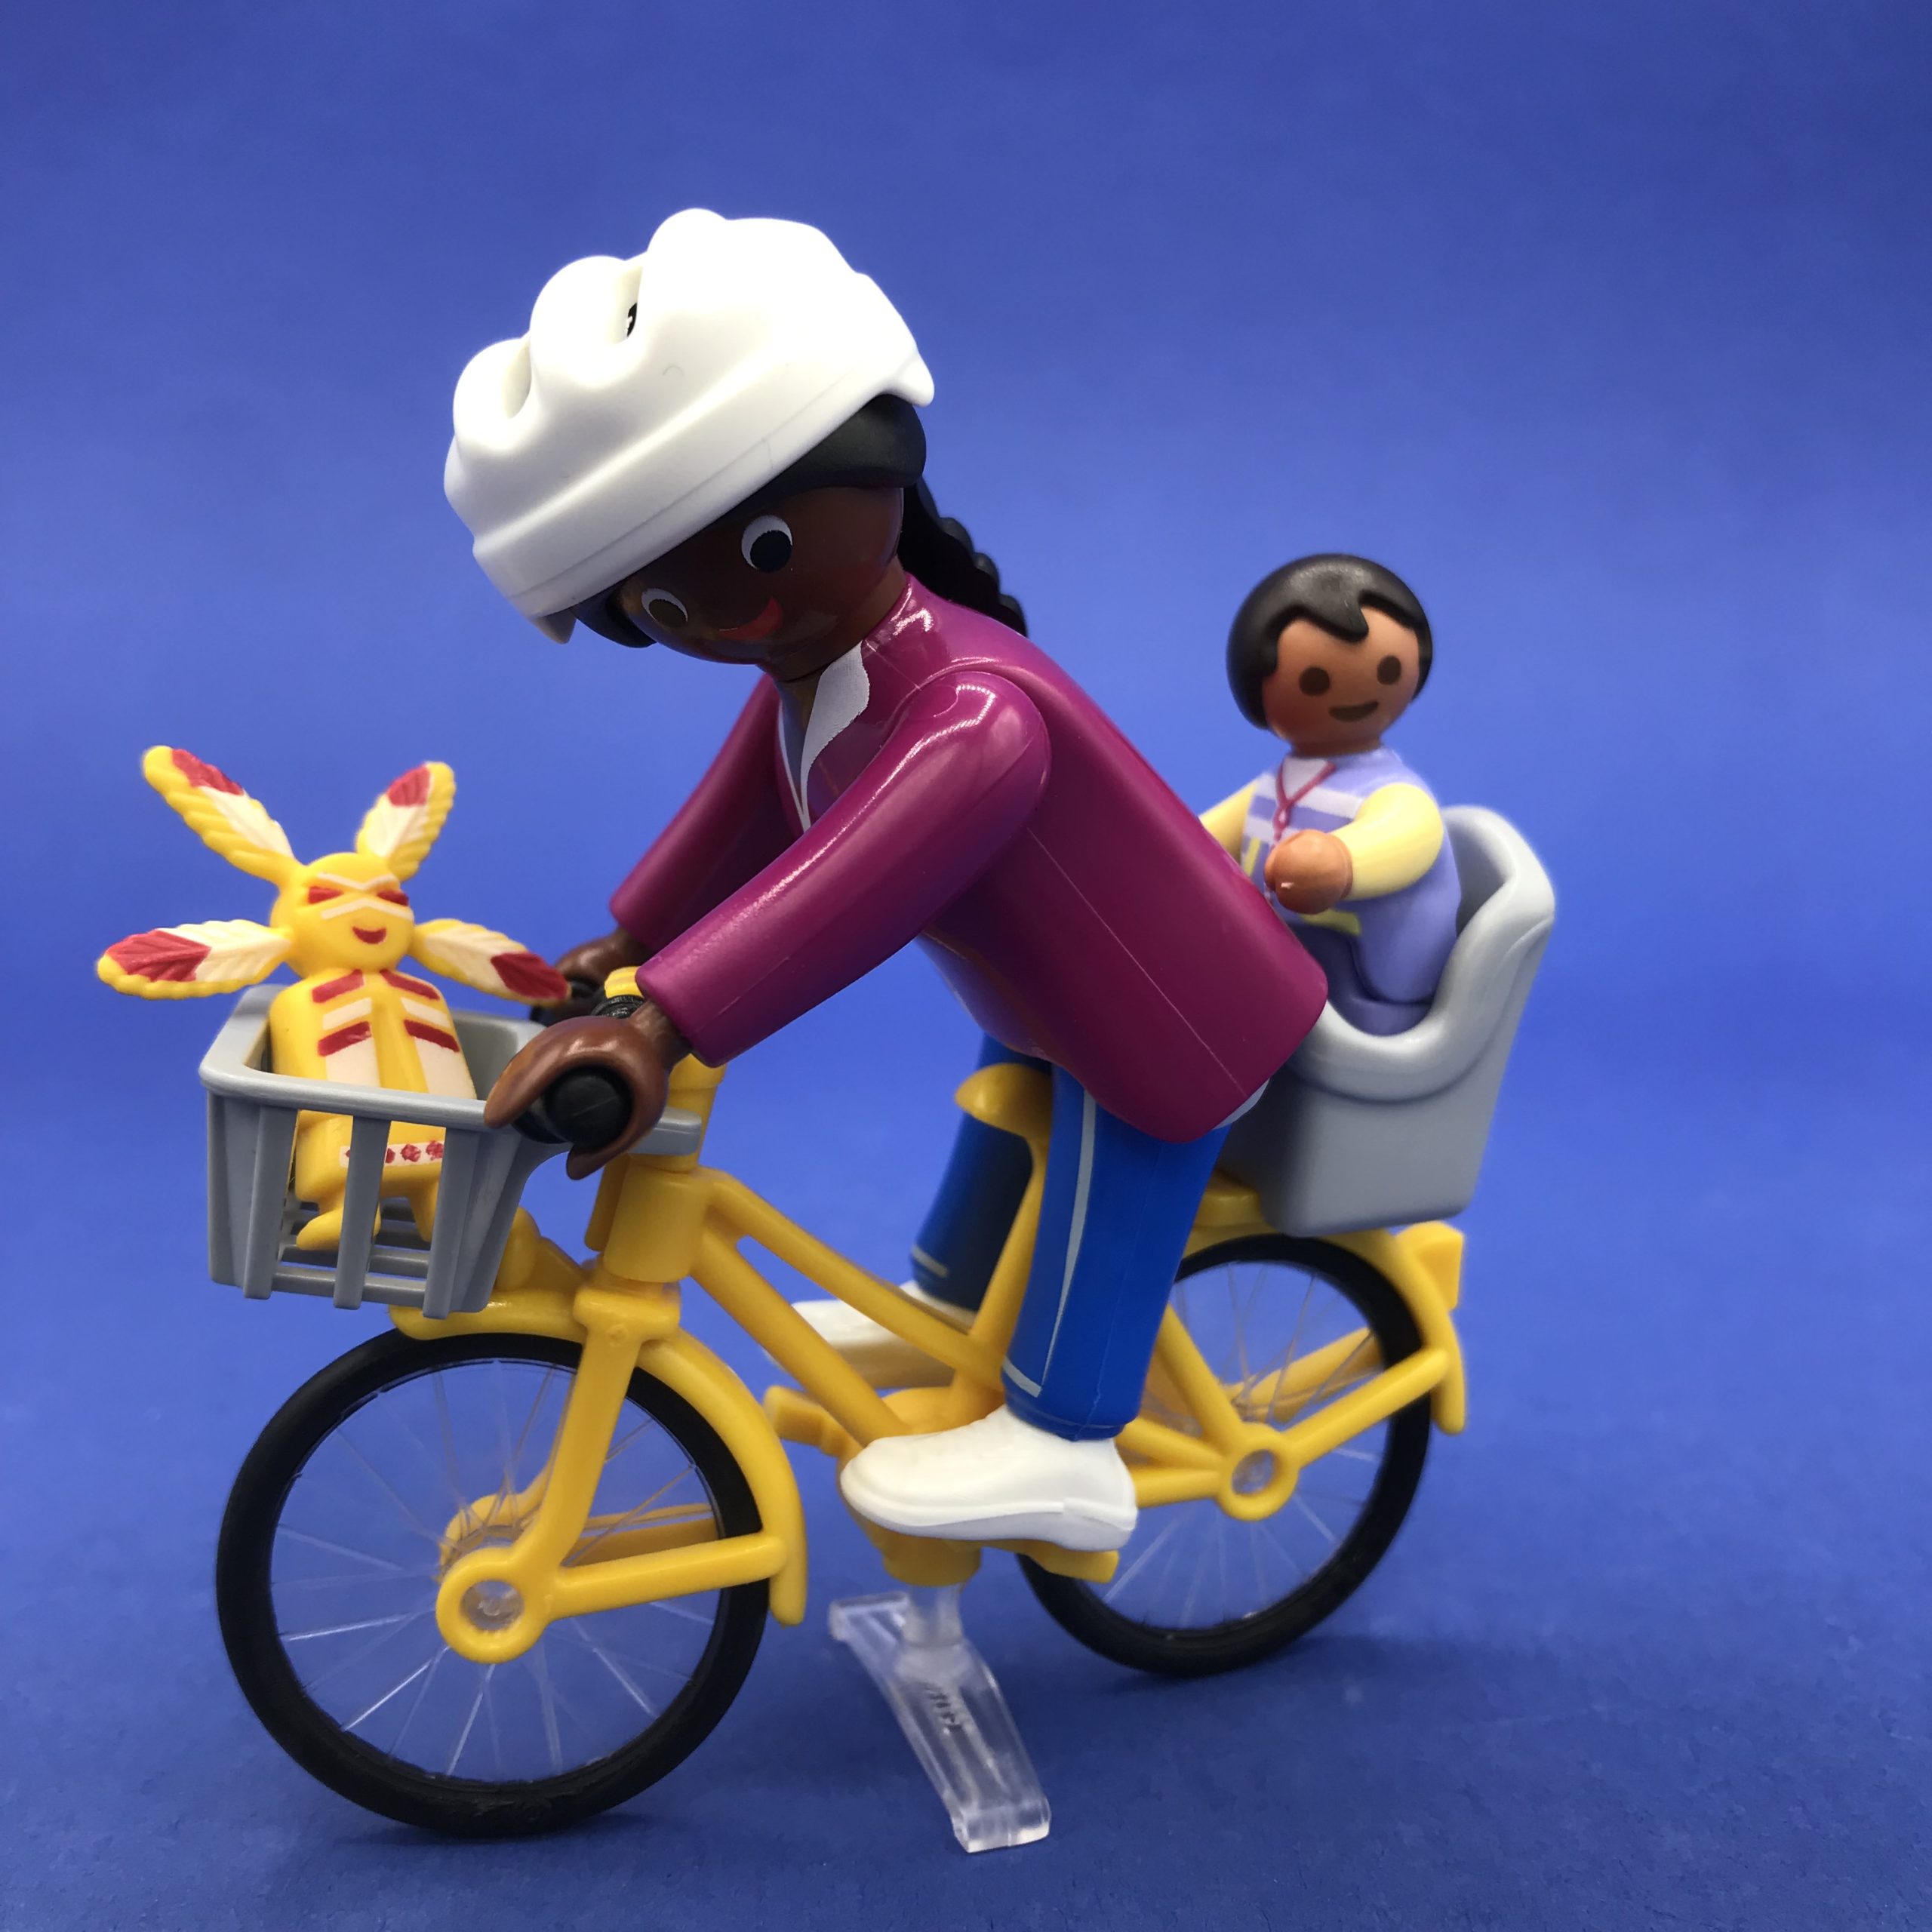 Playmobil met baby op de fiets – Werken met Poppetjes